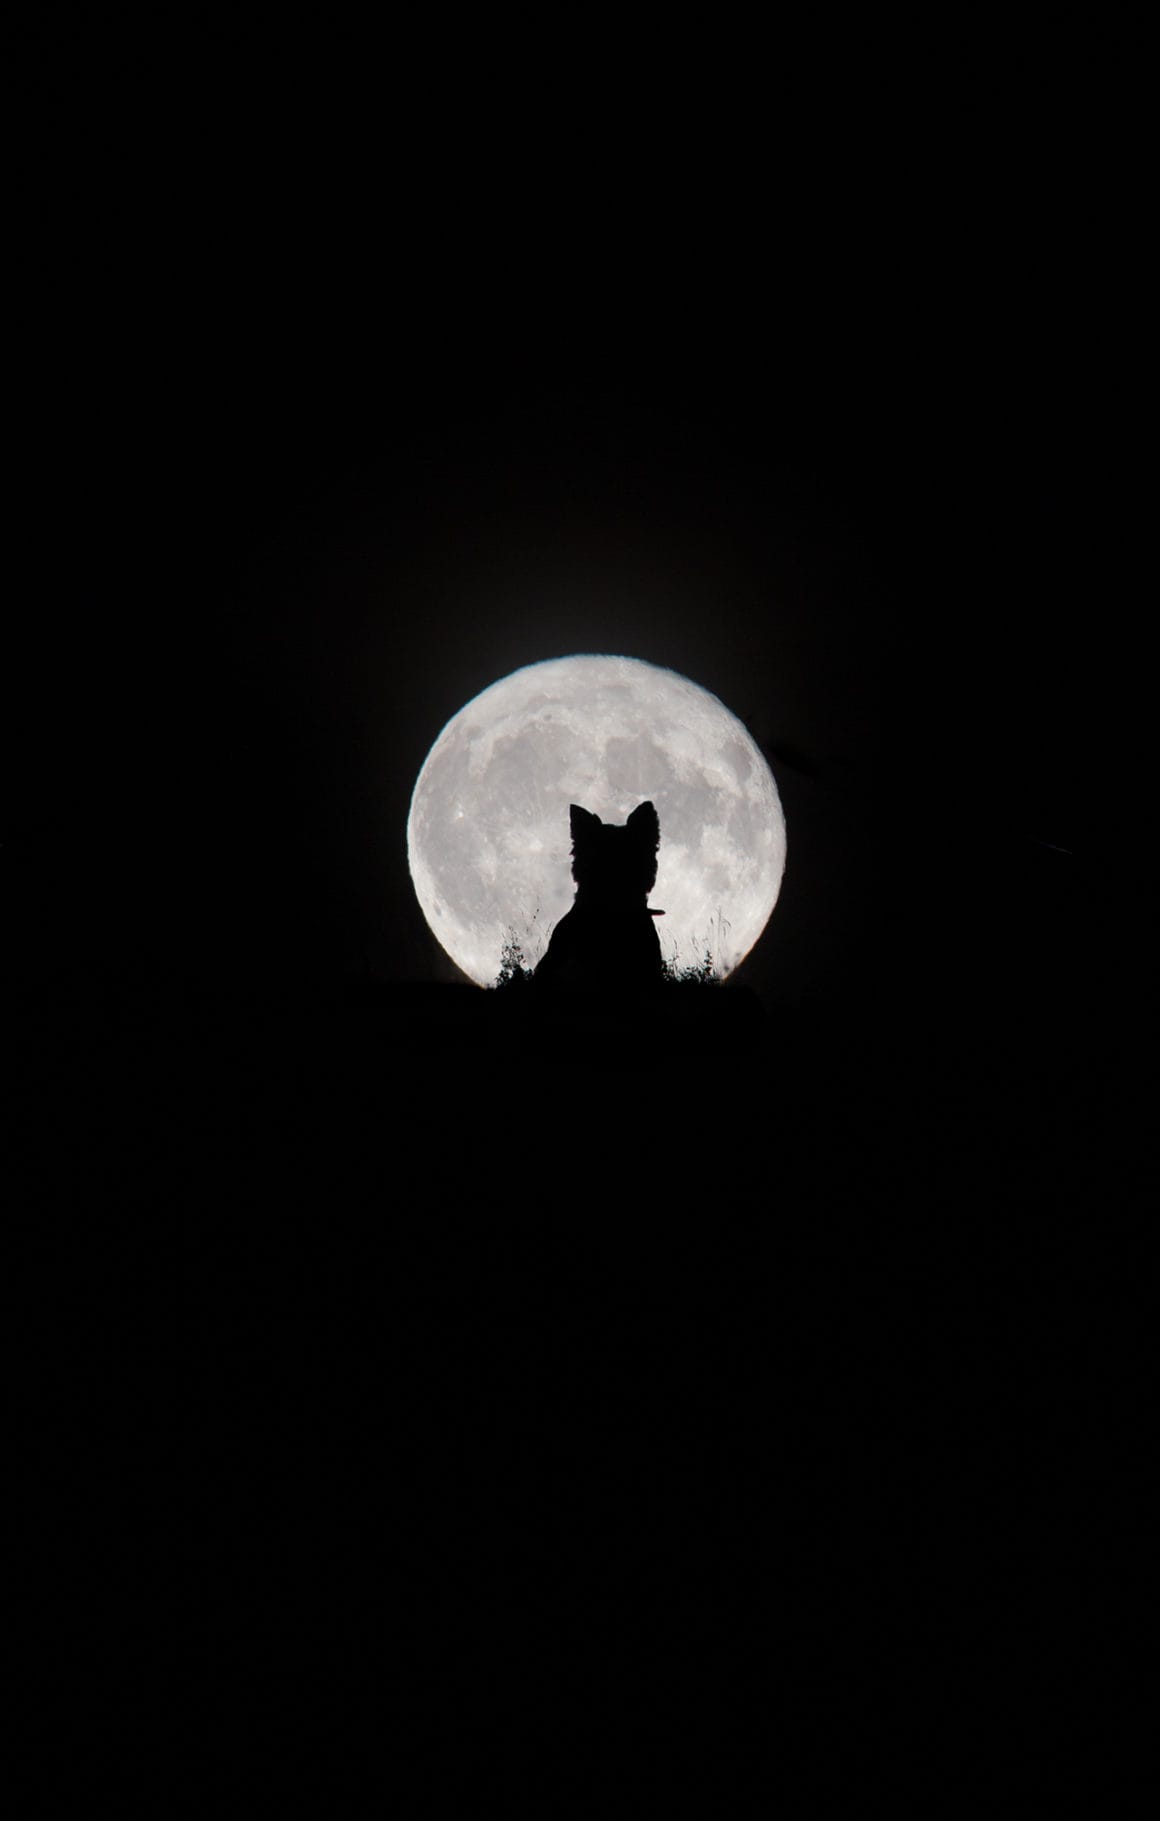 Le cliché "Big Moon, Little Werewolf" est encore en compétition dans la catégorie People's Choice Award du concours Insight Investment Astronomy Photographer of the Year